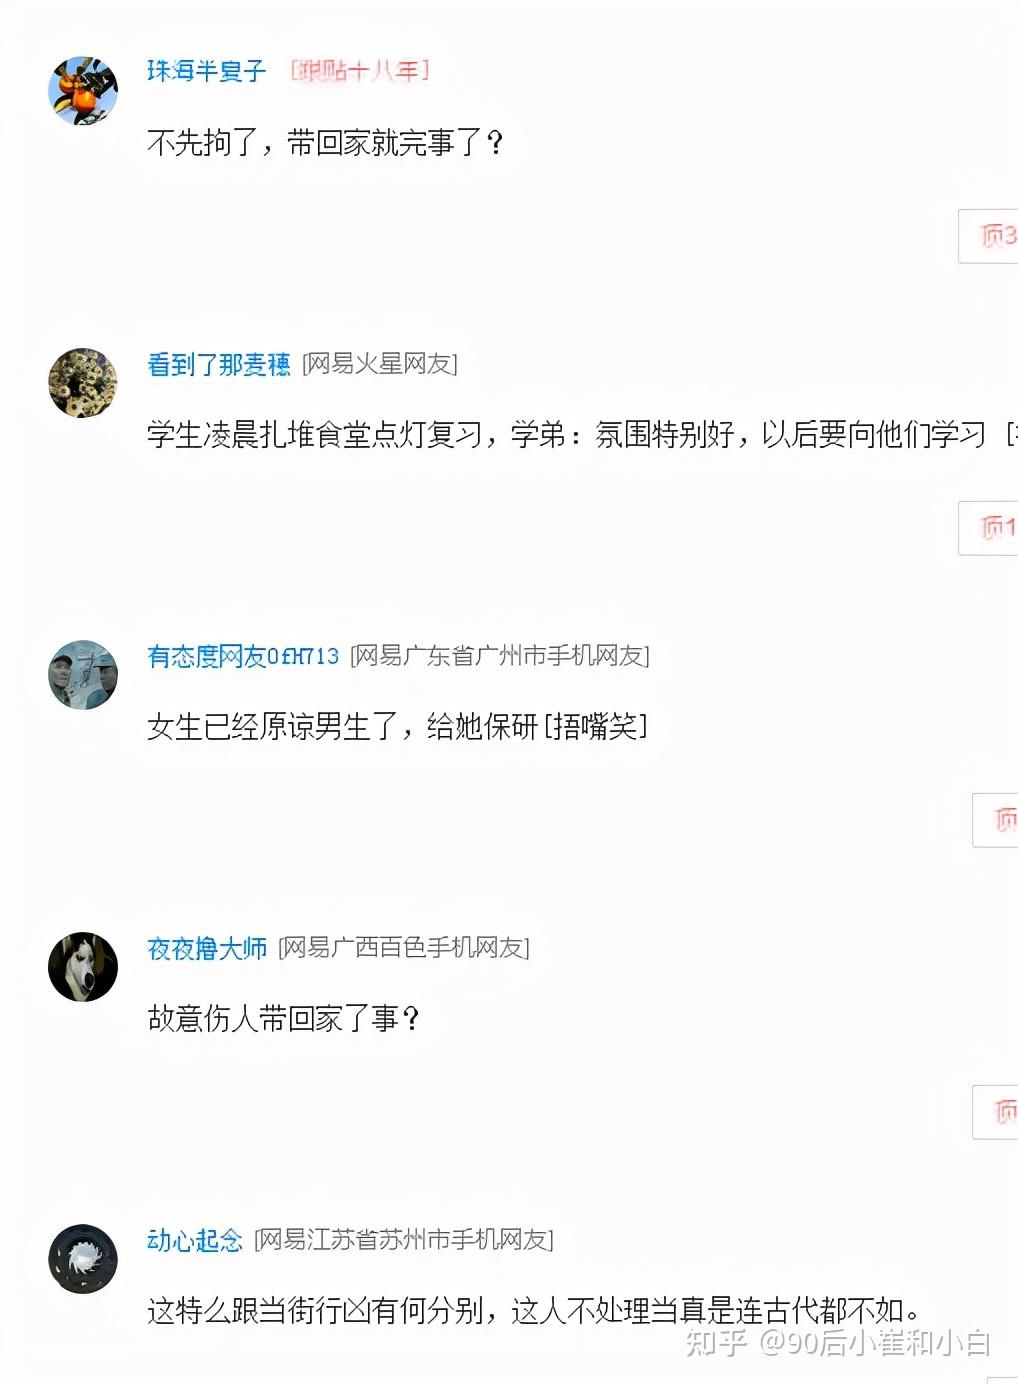 在广东医科大学的伤人事件发生之后,网友也是众说纷纭,觉得这件事情